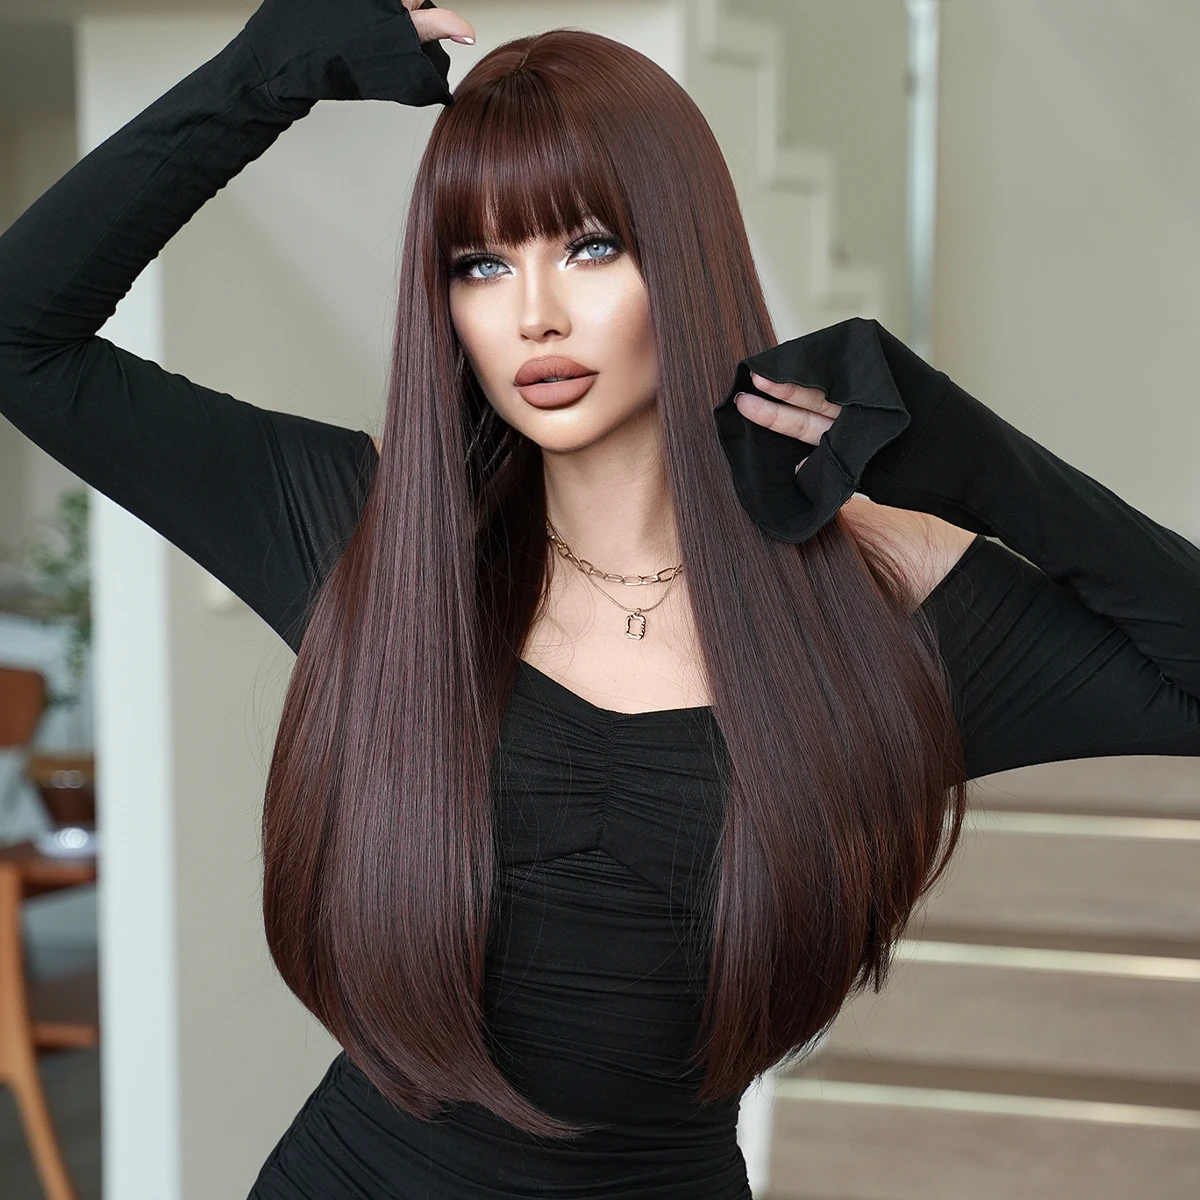 7jhhウィッグ-女性用フリンジ付き合成かつら、長いストレートブラウンの髪、耐熱性、日常使用、パーティー用